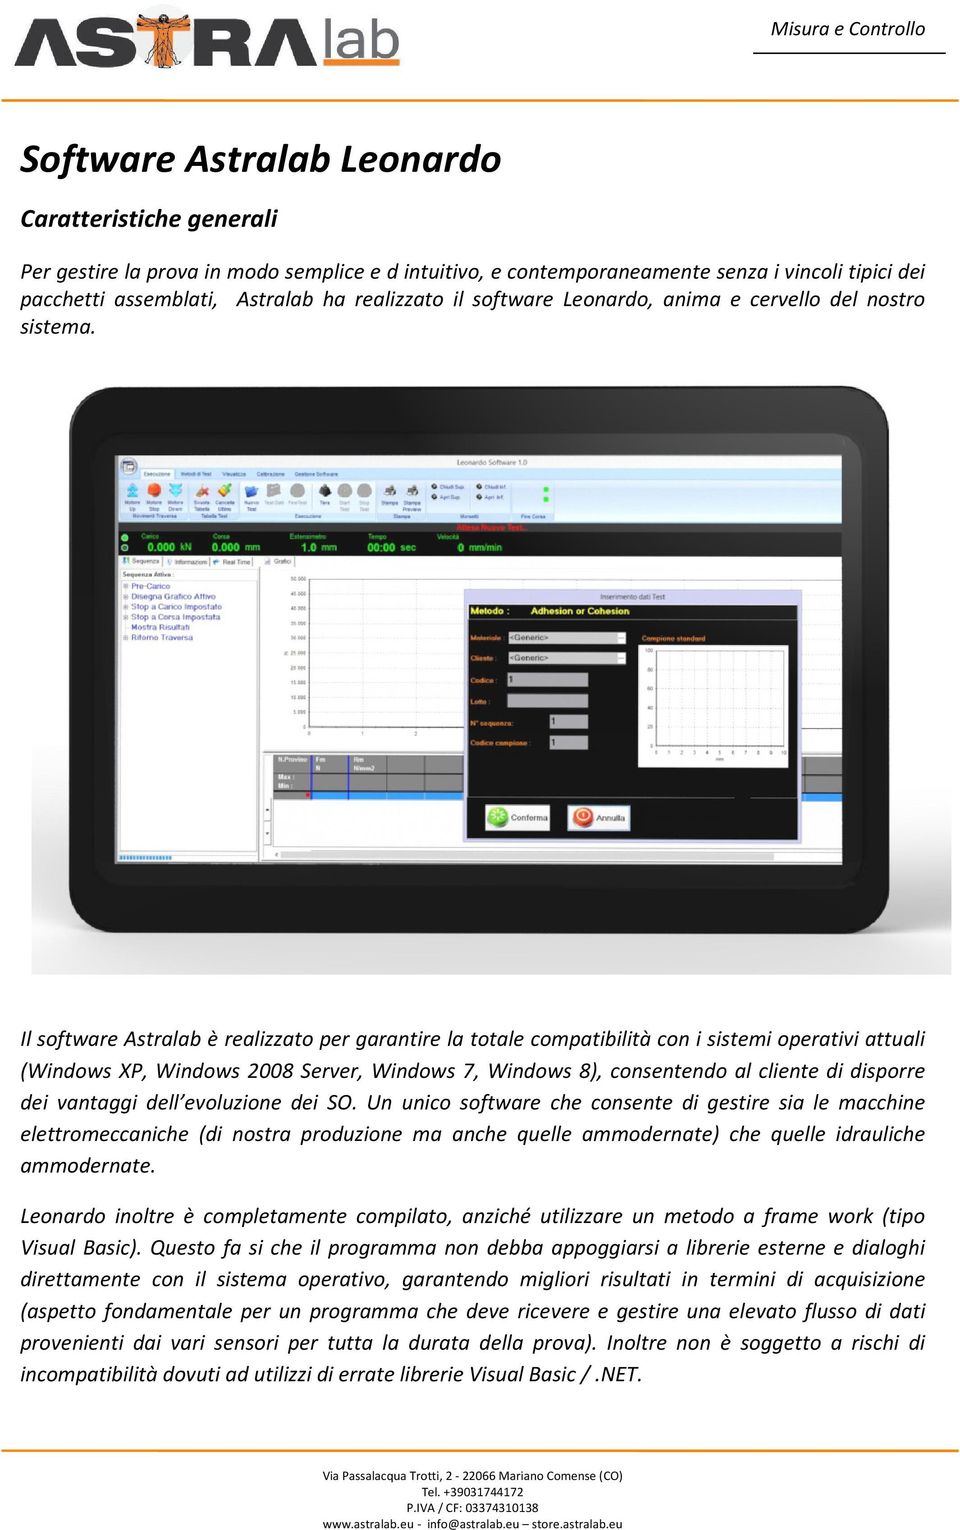 Il software Astralab è realizzato per garantire la totale compatibilità con i sistemi operativi attuali (Windows XP, Windows 2008 Server, Windows 7, Windows 8), consentendo al cliente di disporre dei